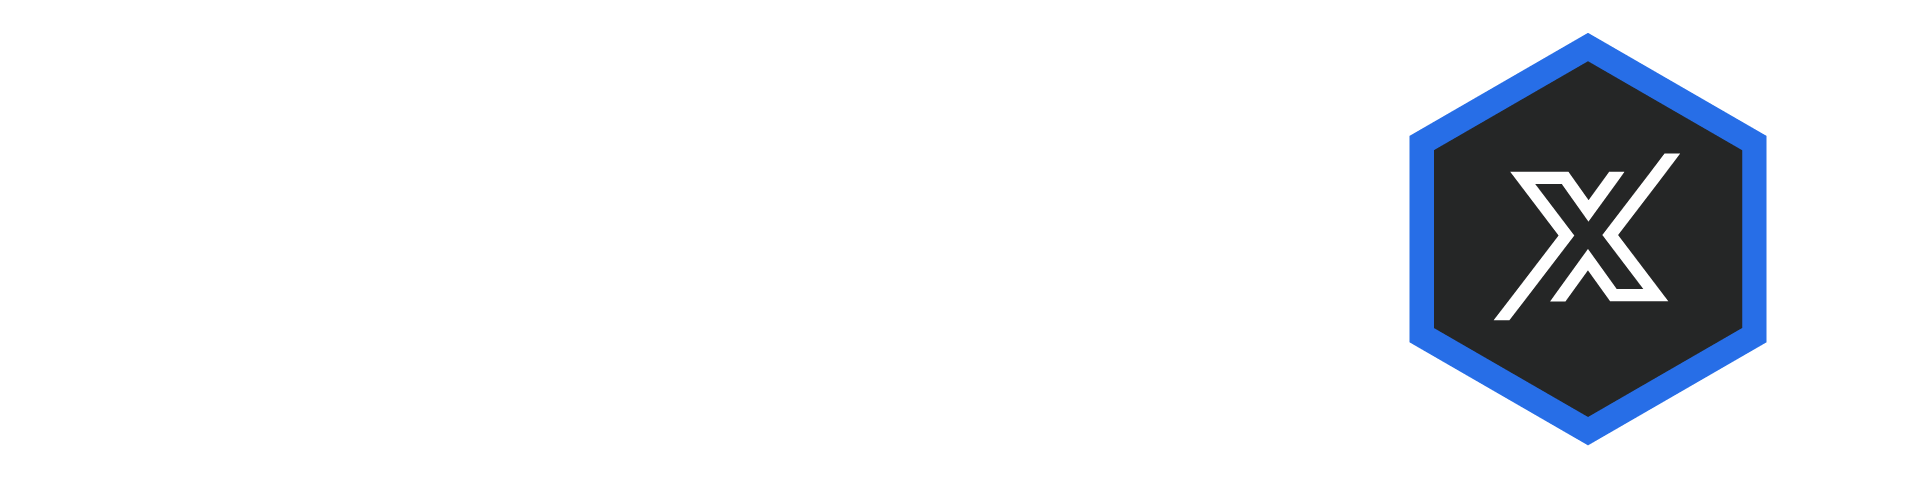 hd-deck-x White